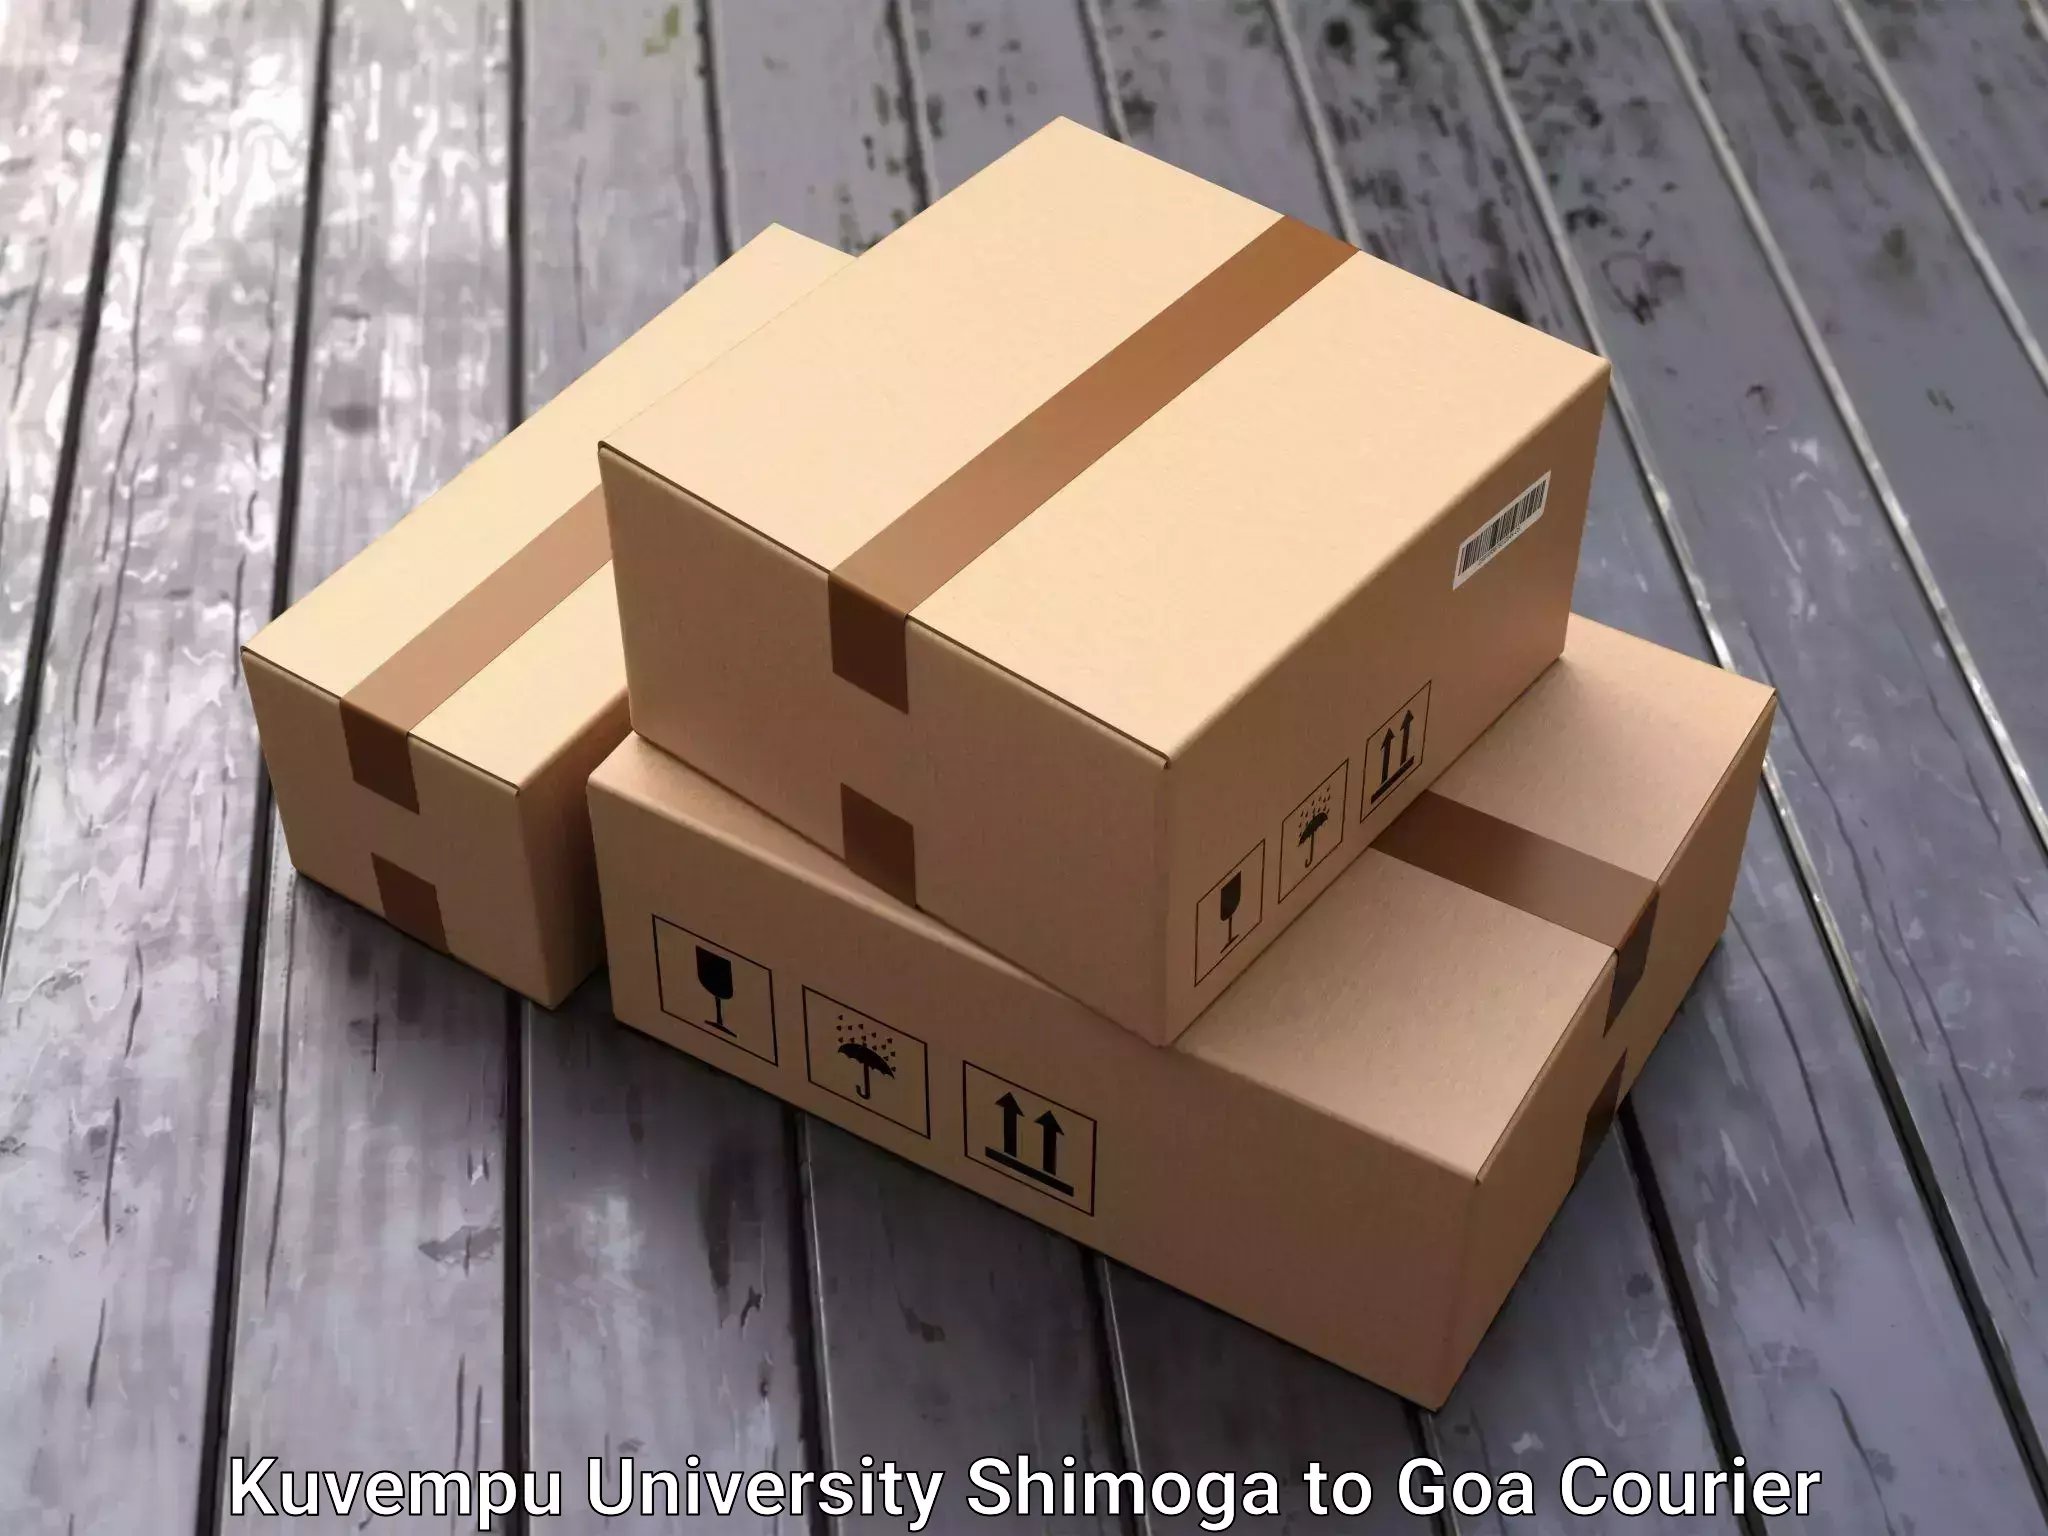 Furniture moving specialists Kuvempu University Shimoga to Goa University